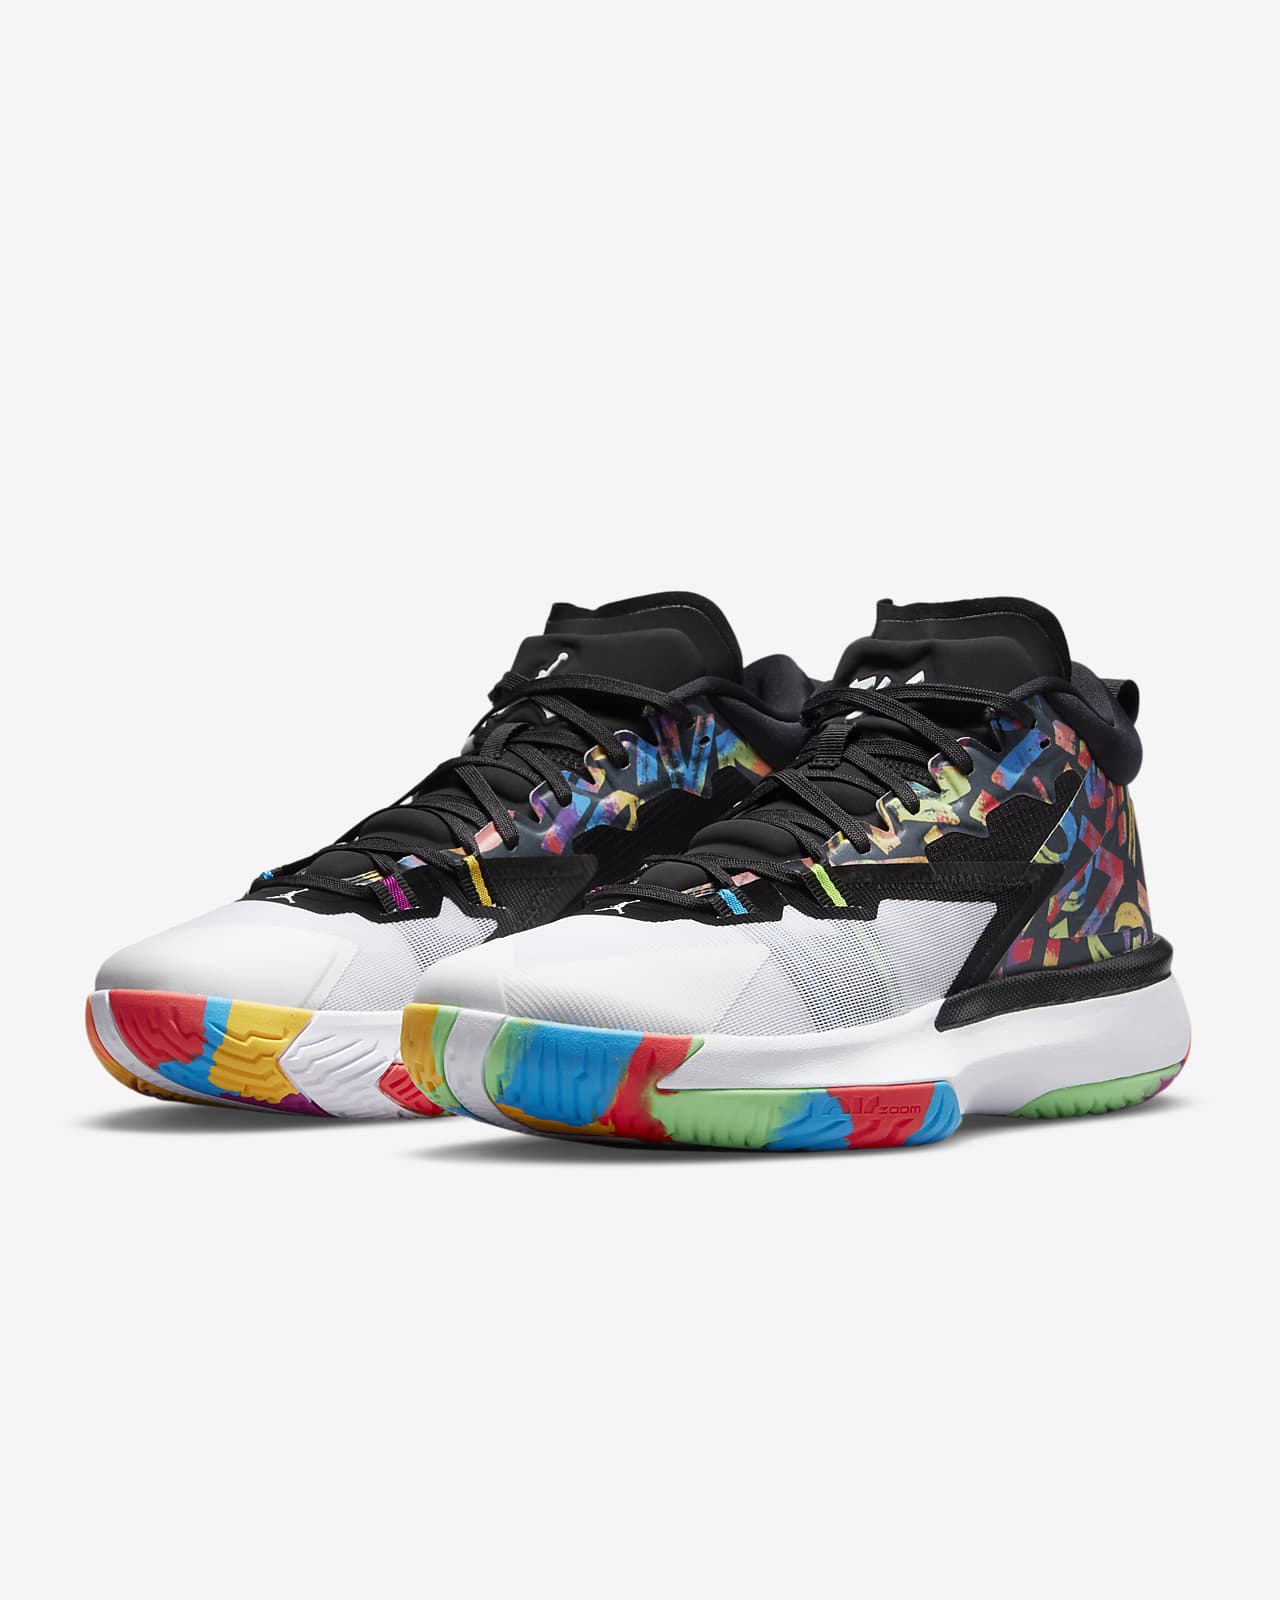 Zion 1 PF Basketball Shoe